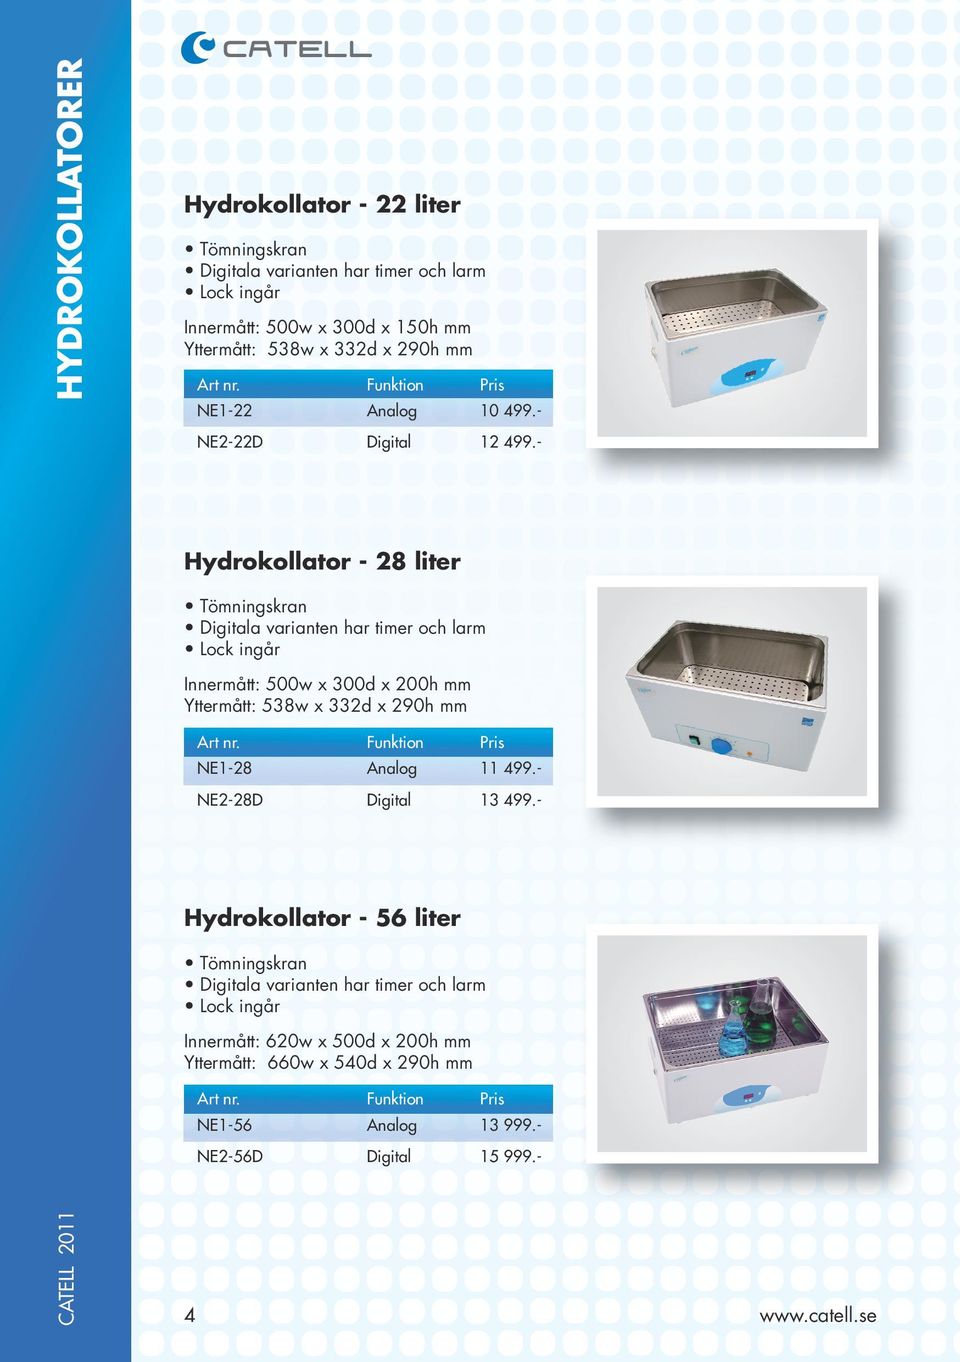 - Hydrokollator - 28 liter Digitala varianten har timer och larm Innermått: 500w x 300d x 200h mm Yttermått: 538w x 332d x 290h mm